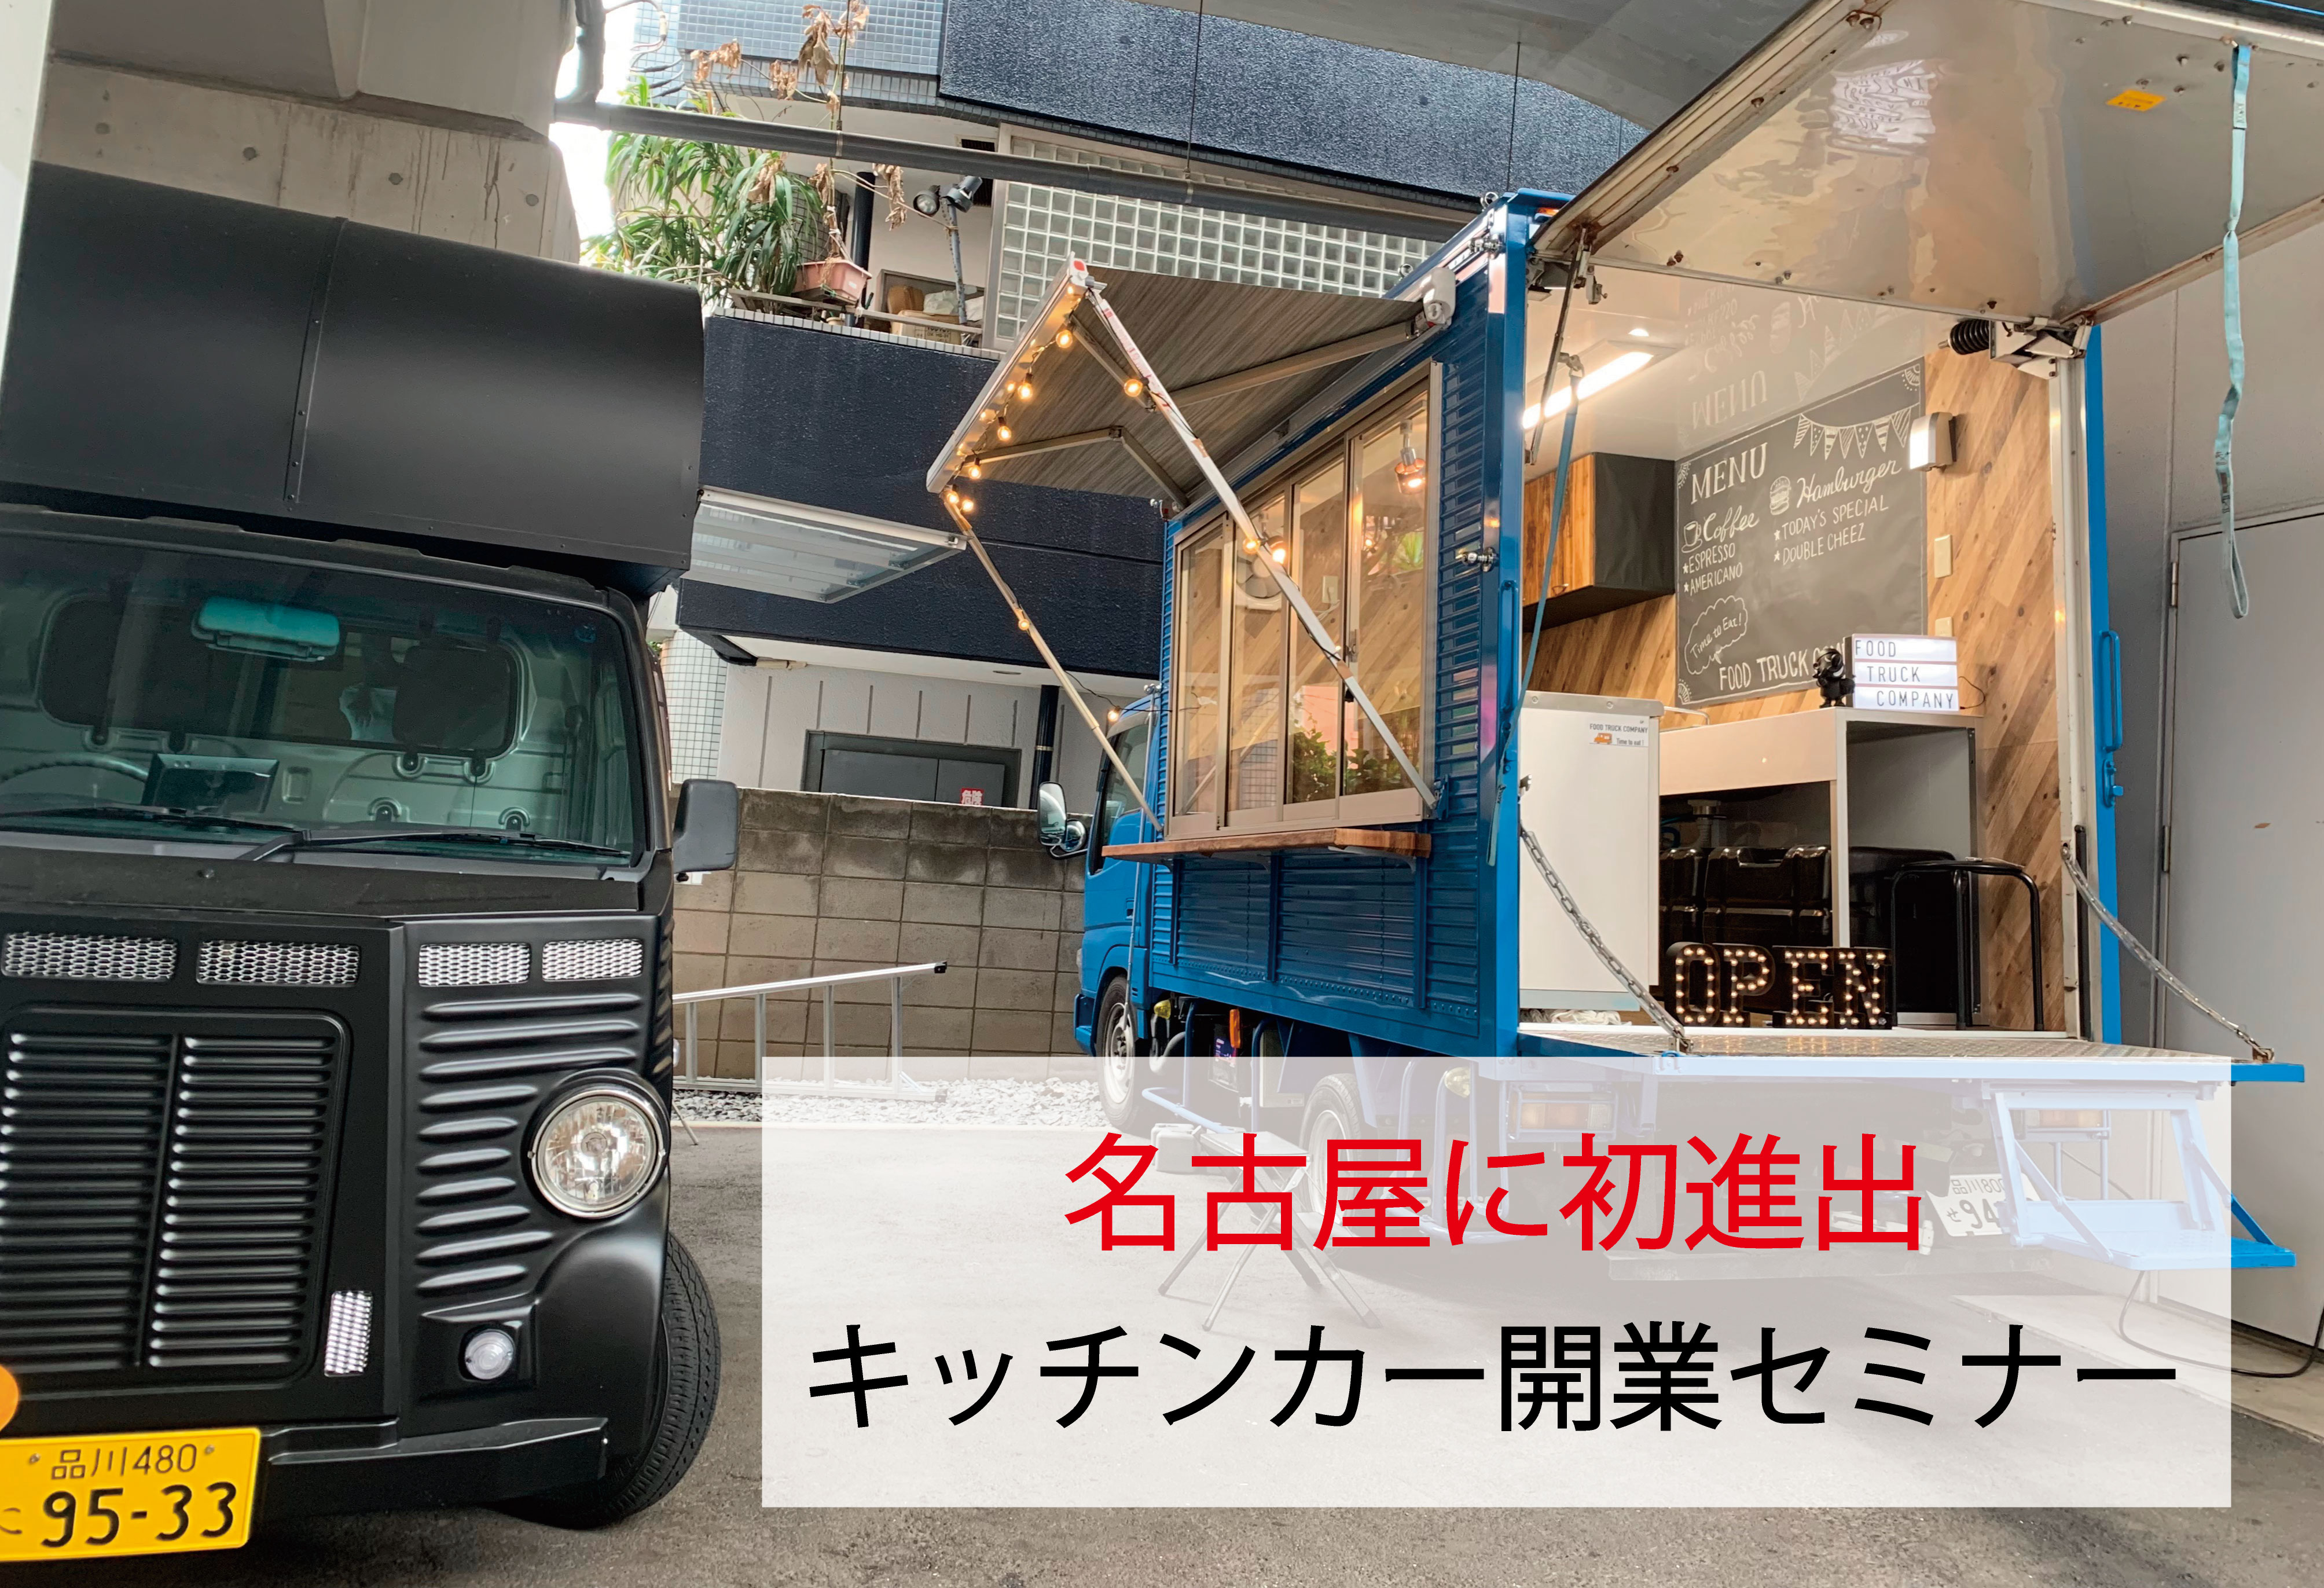 フードトラックカンパニーによる キッチンカー の開業セミナー が名古屋に初進出 19年11月29日に名古屋 新栄 で開催 株式会社フードトラックカンパニーのプレスリリース